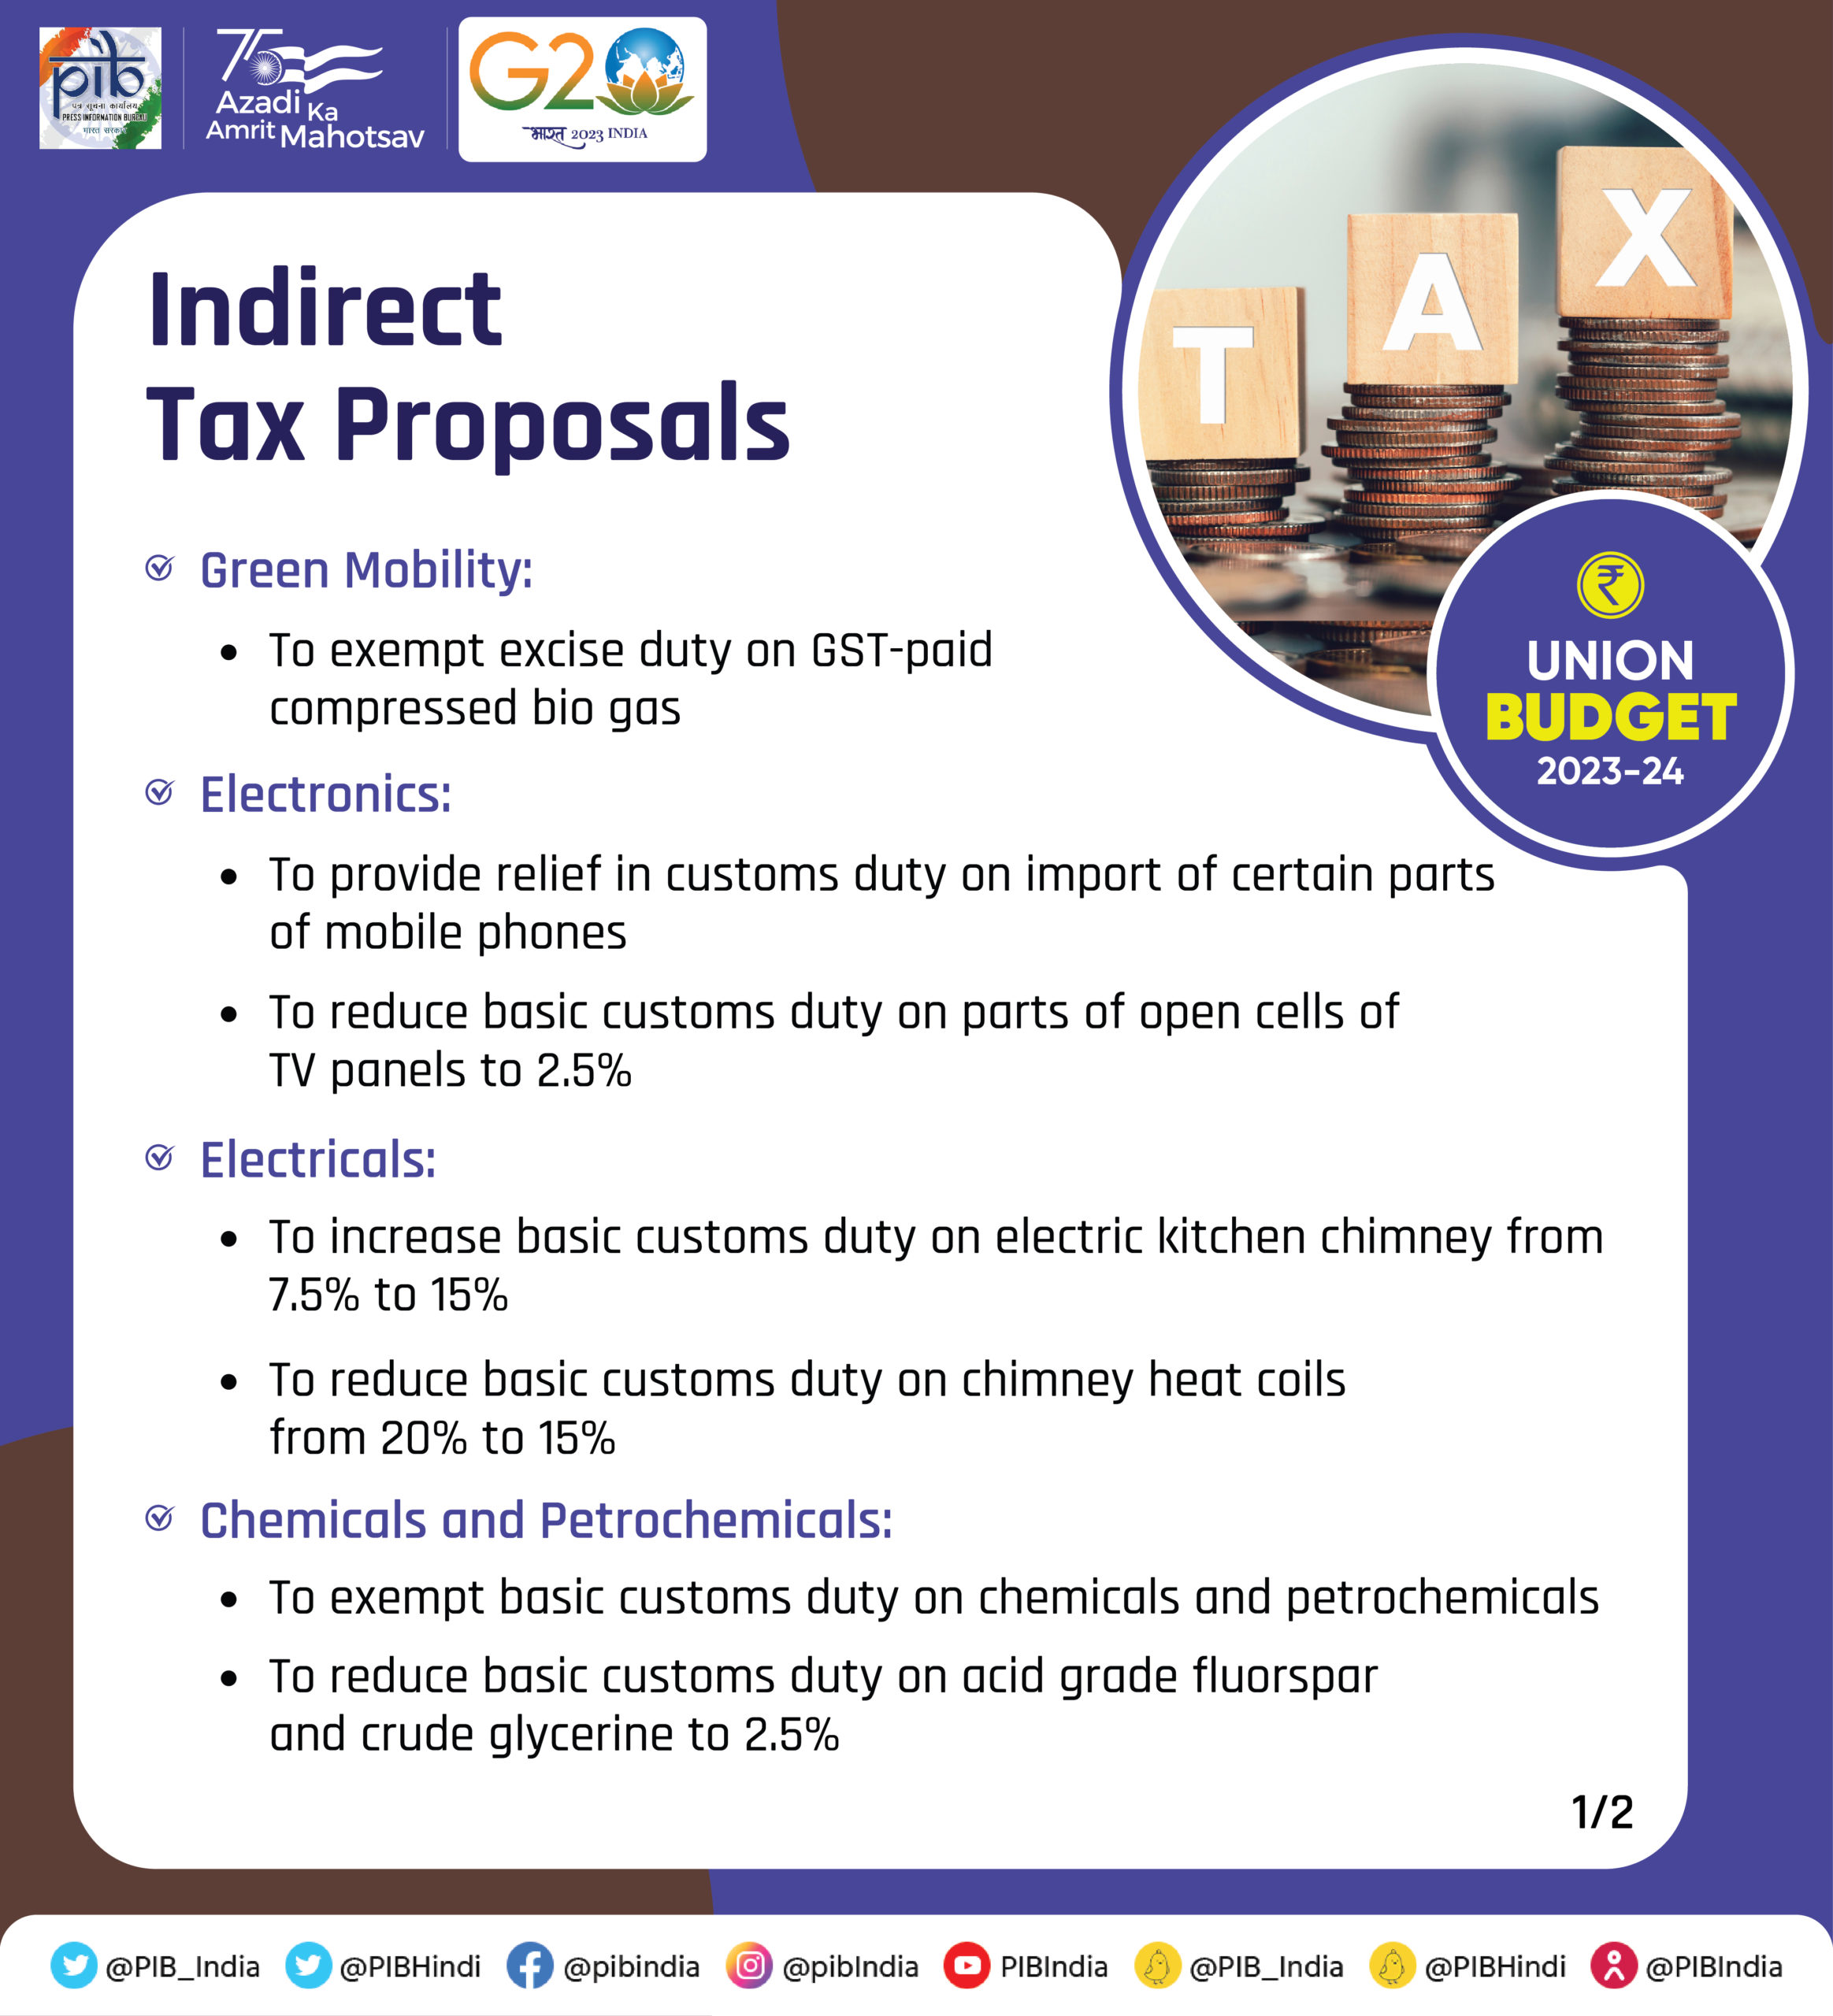 Indirect Tax Proposal Union Budget 2023-24